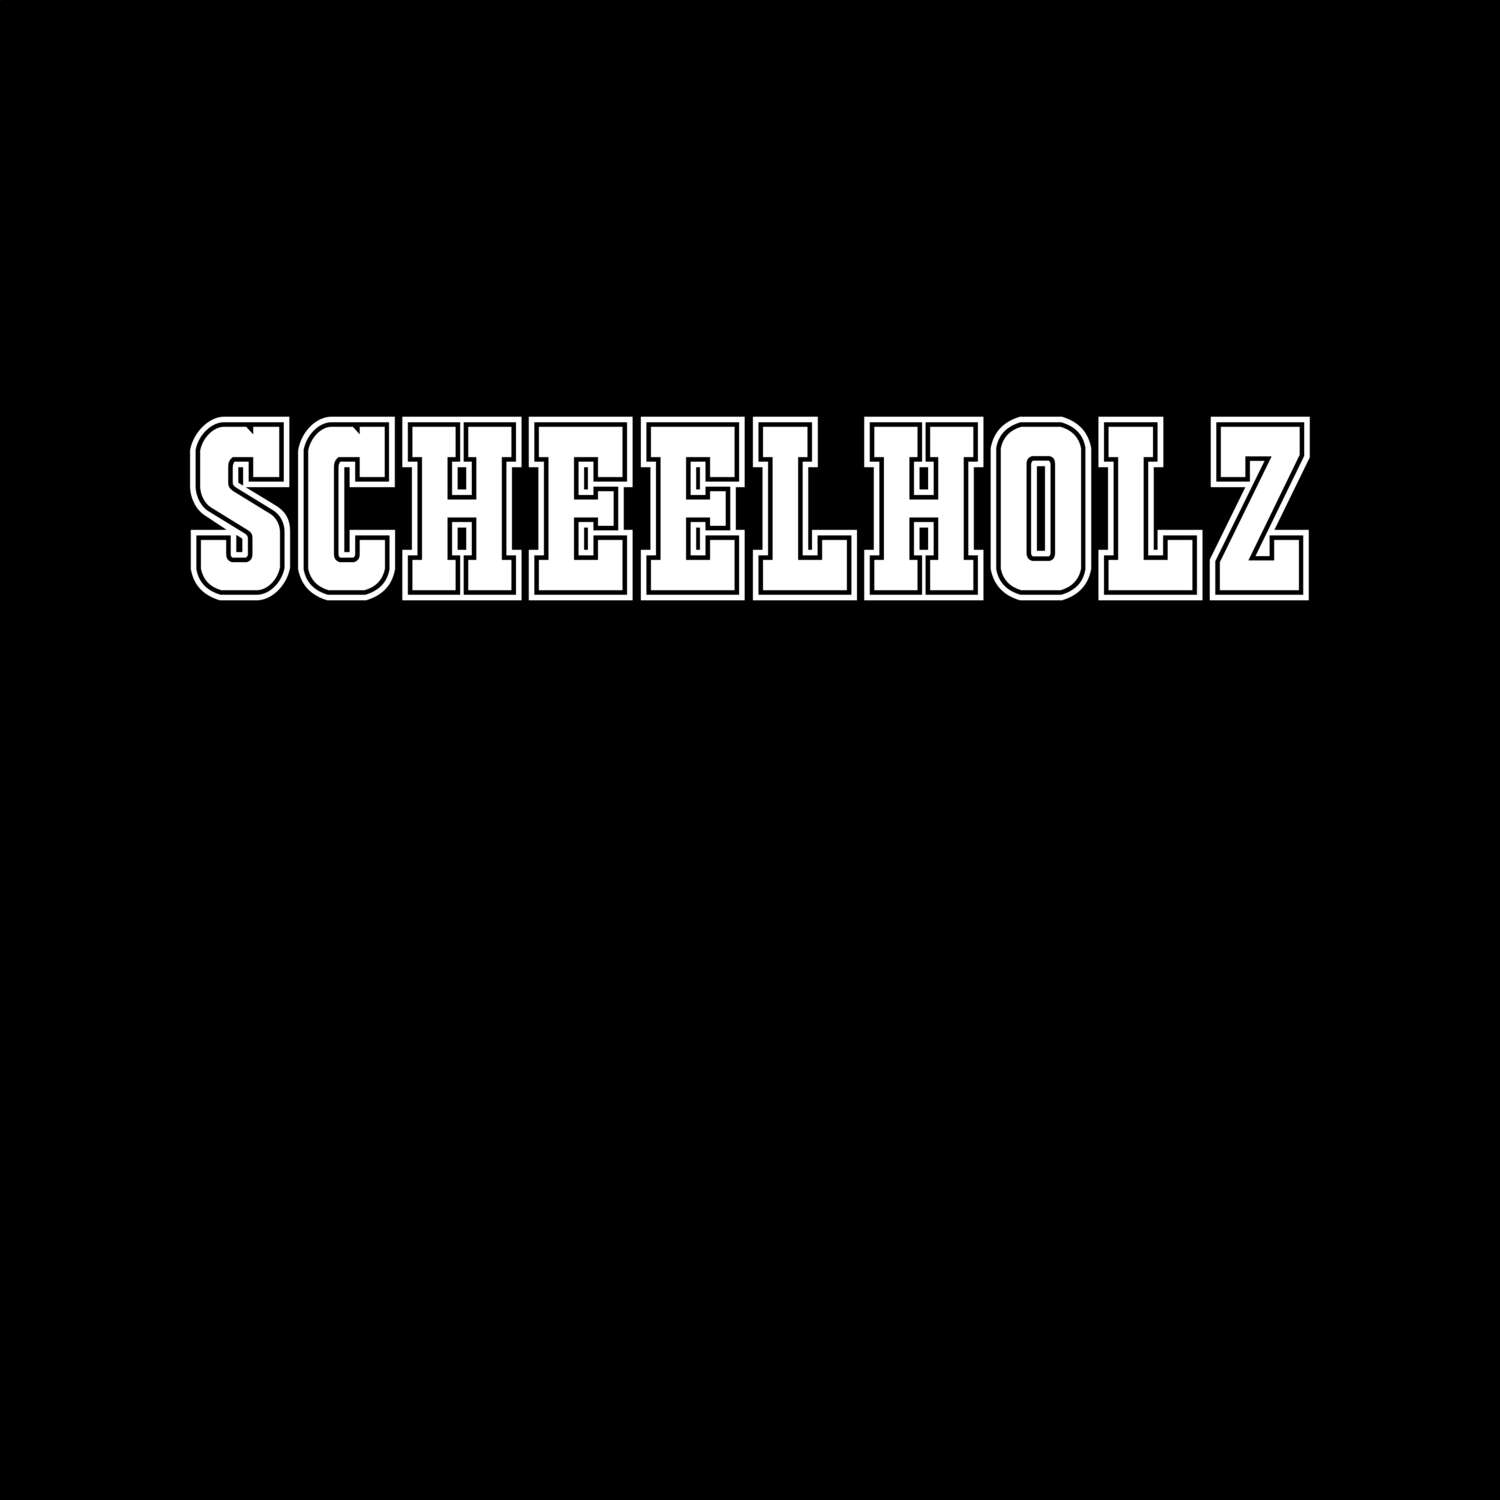 Scheelholz T-Shirt »Classic«